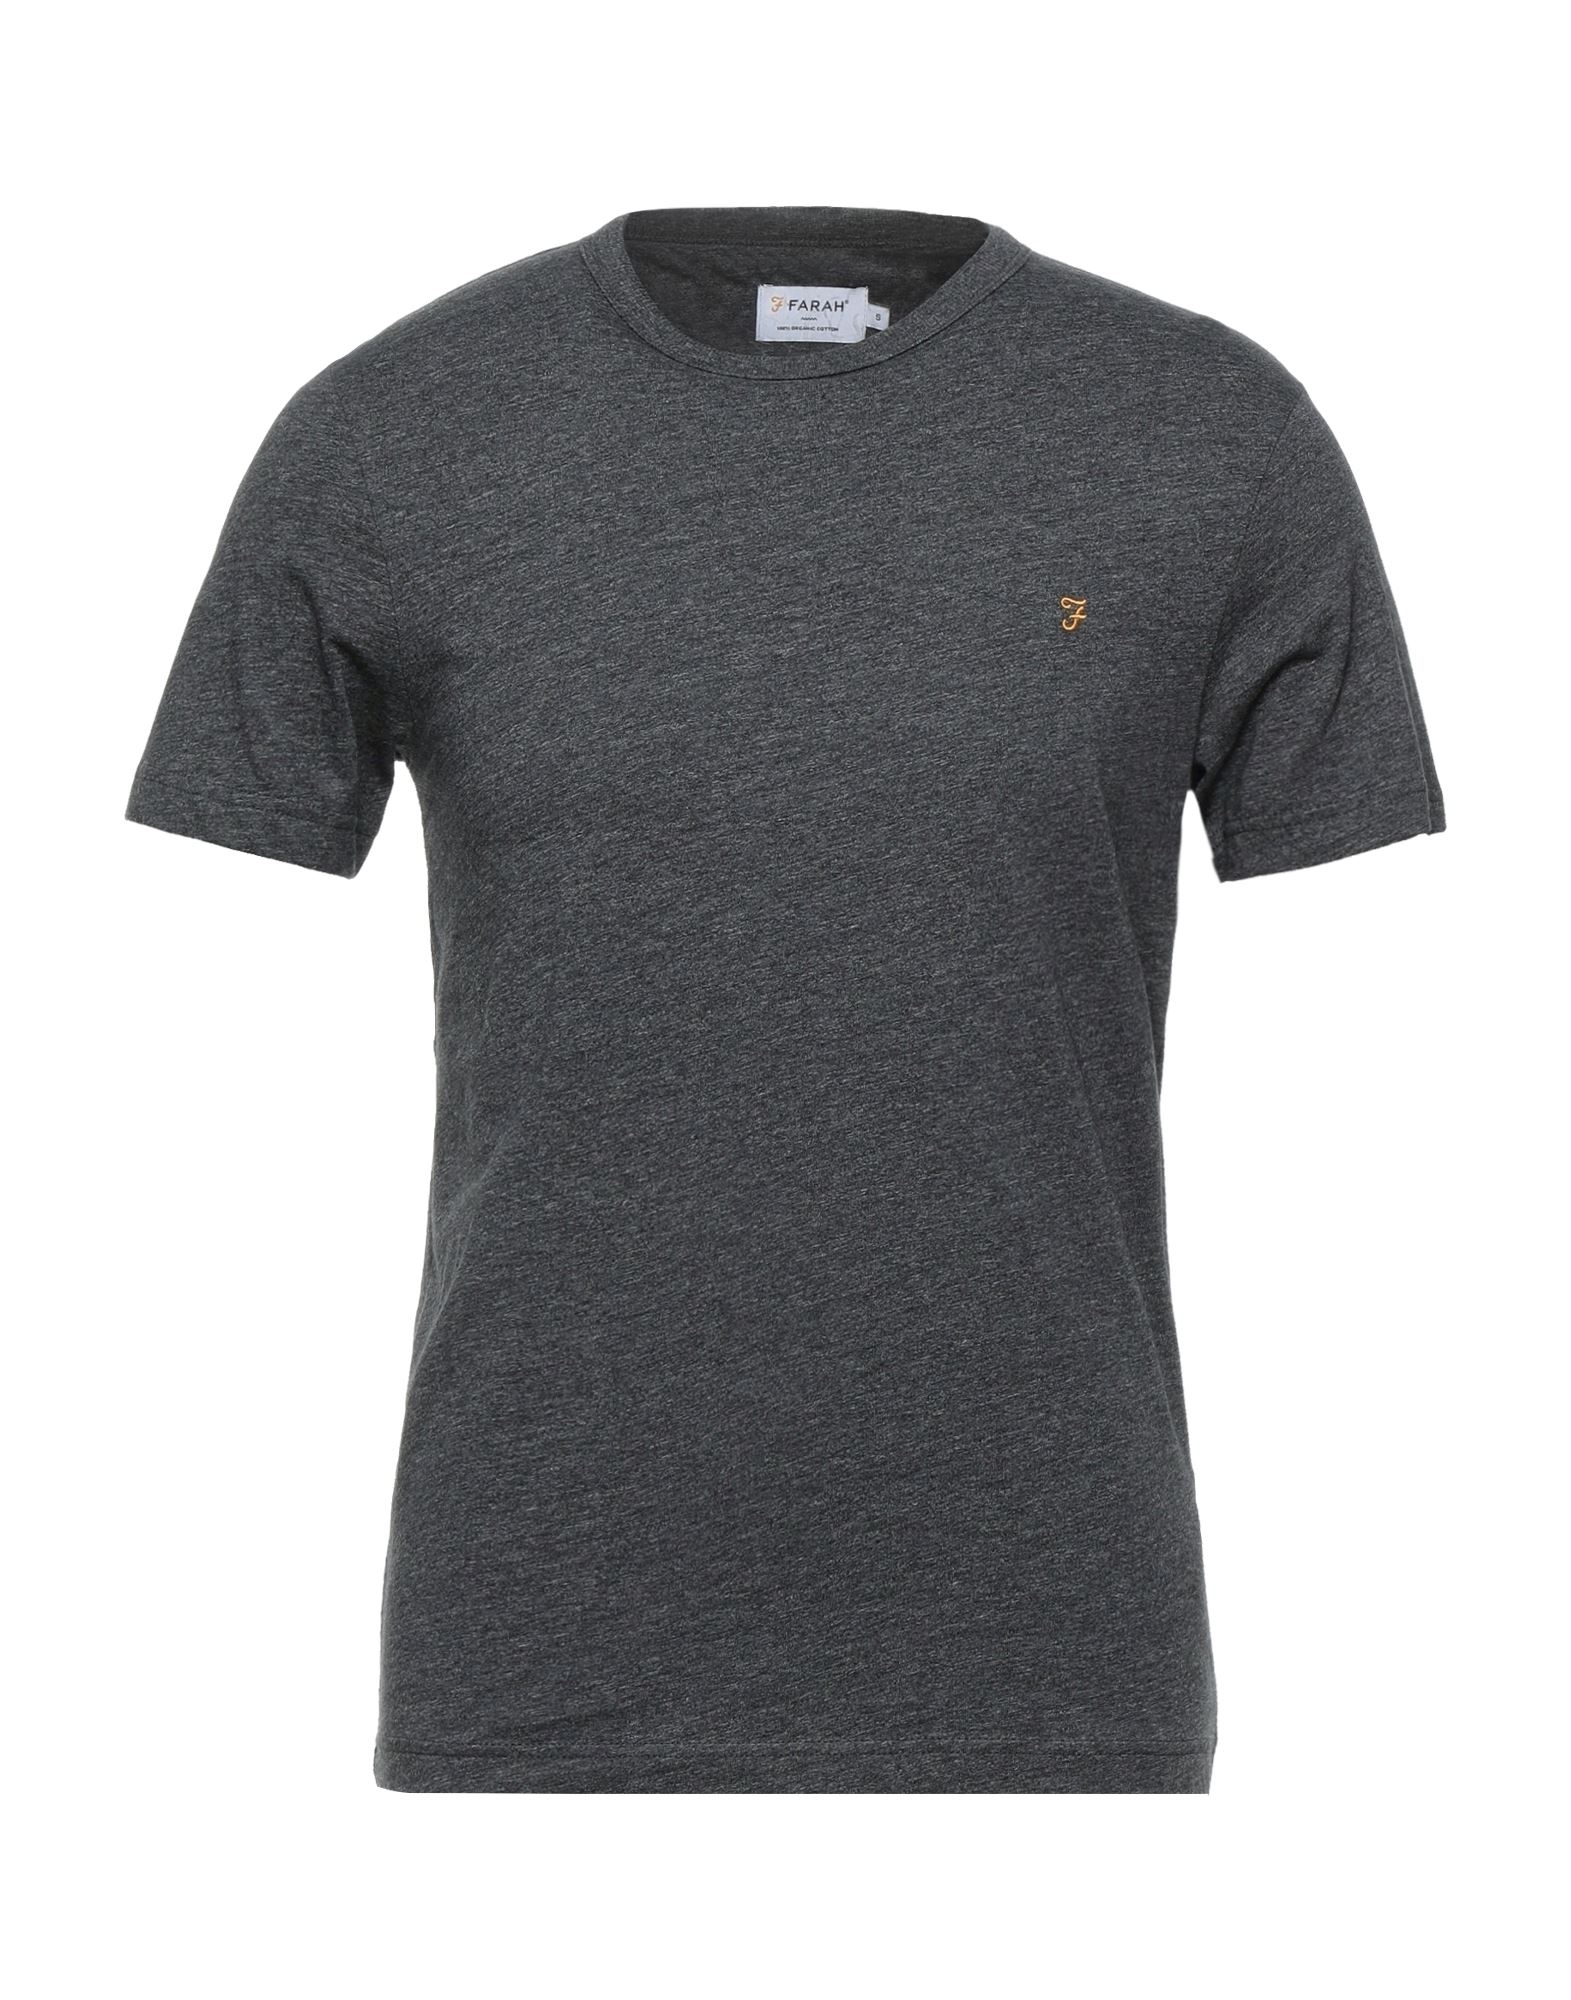 Farah T-shirts In Grey